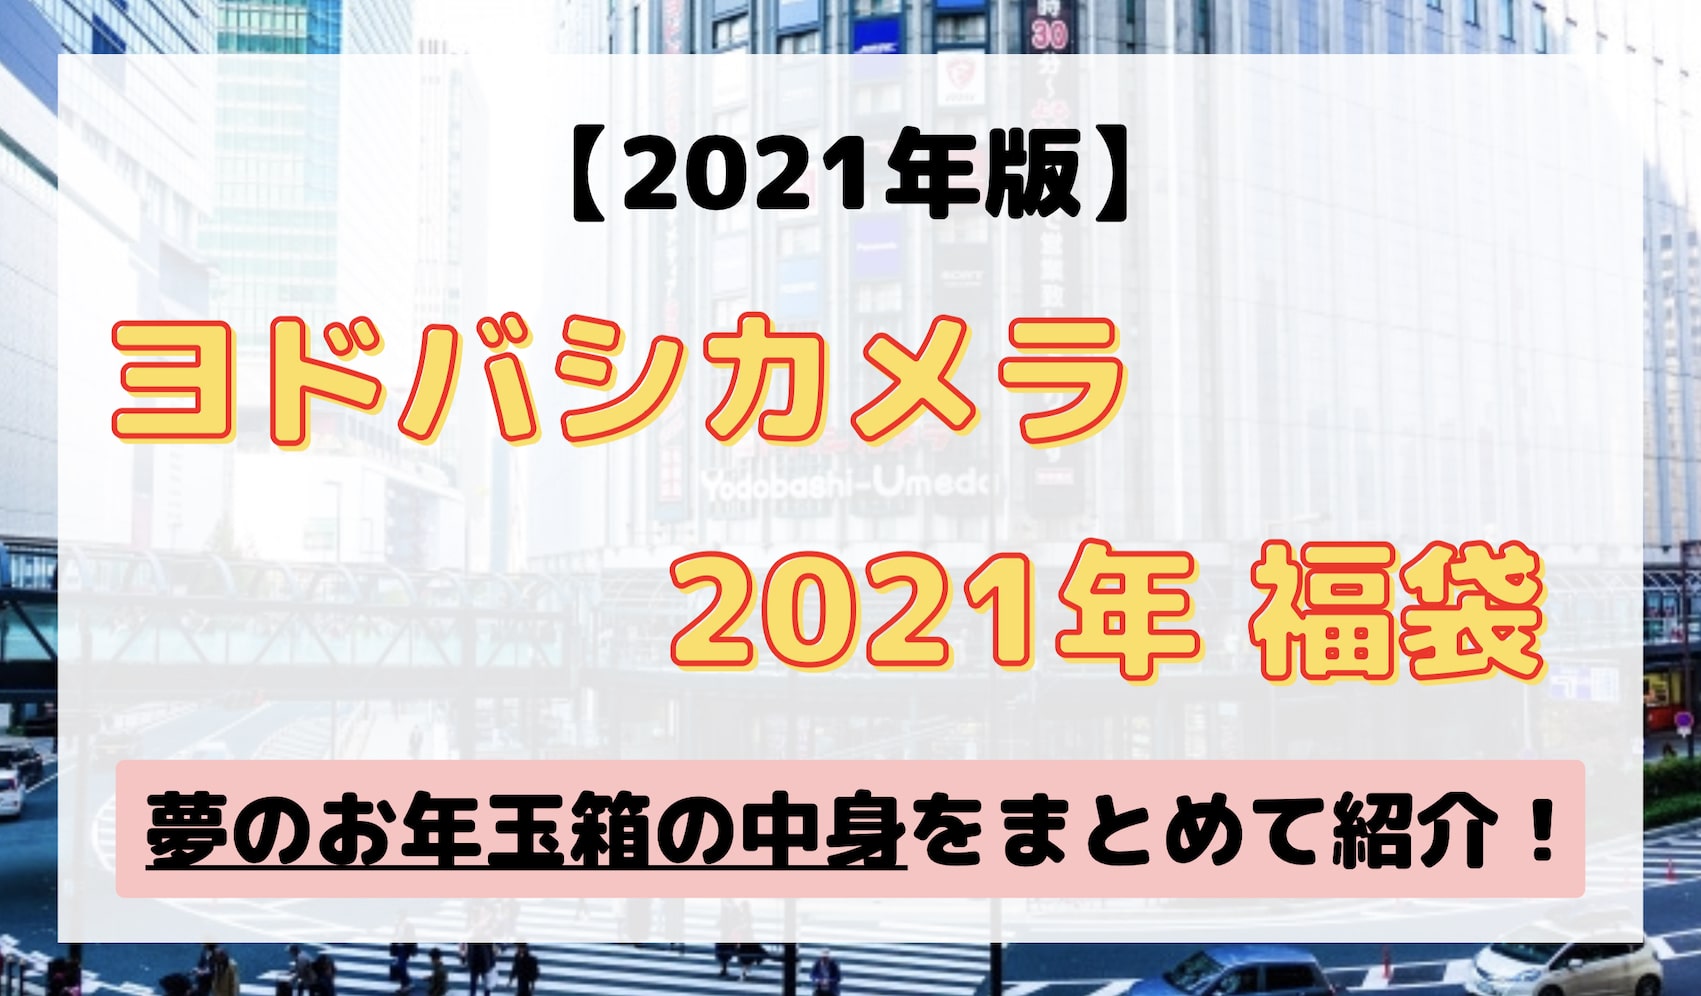 ヨドバシ 福袋 夢のお年玉箱 2021 一眼 Nikon D3400 SIGMA